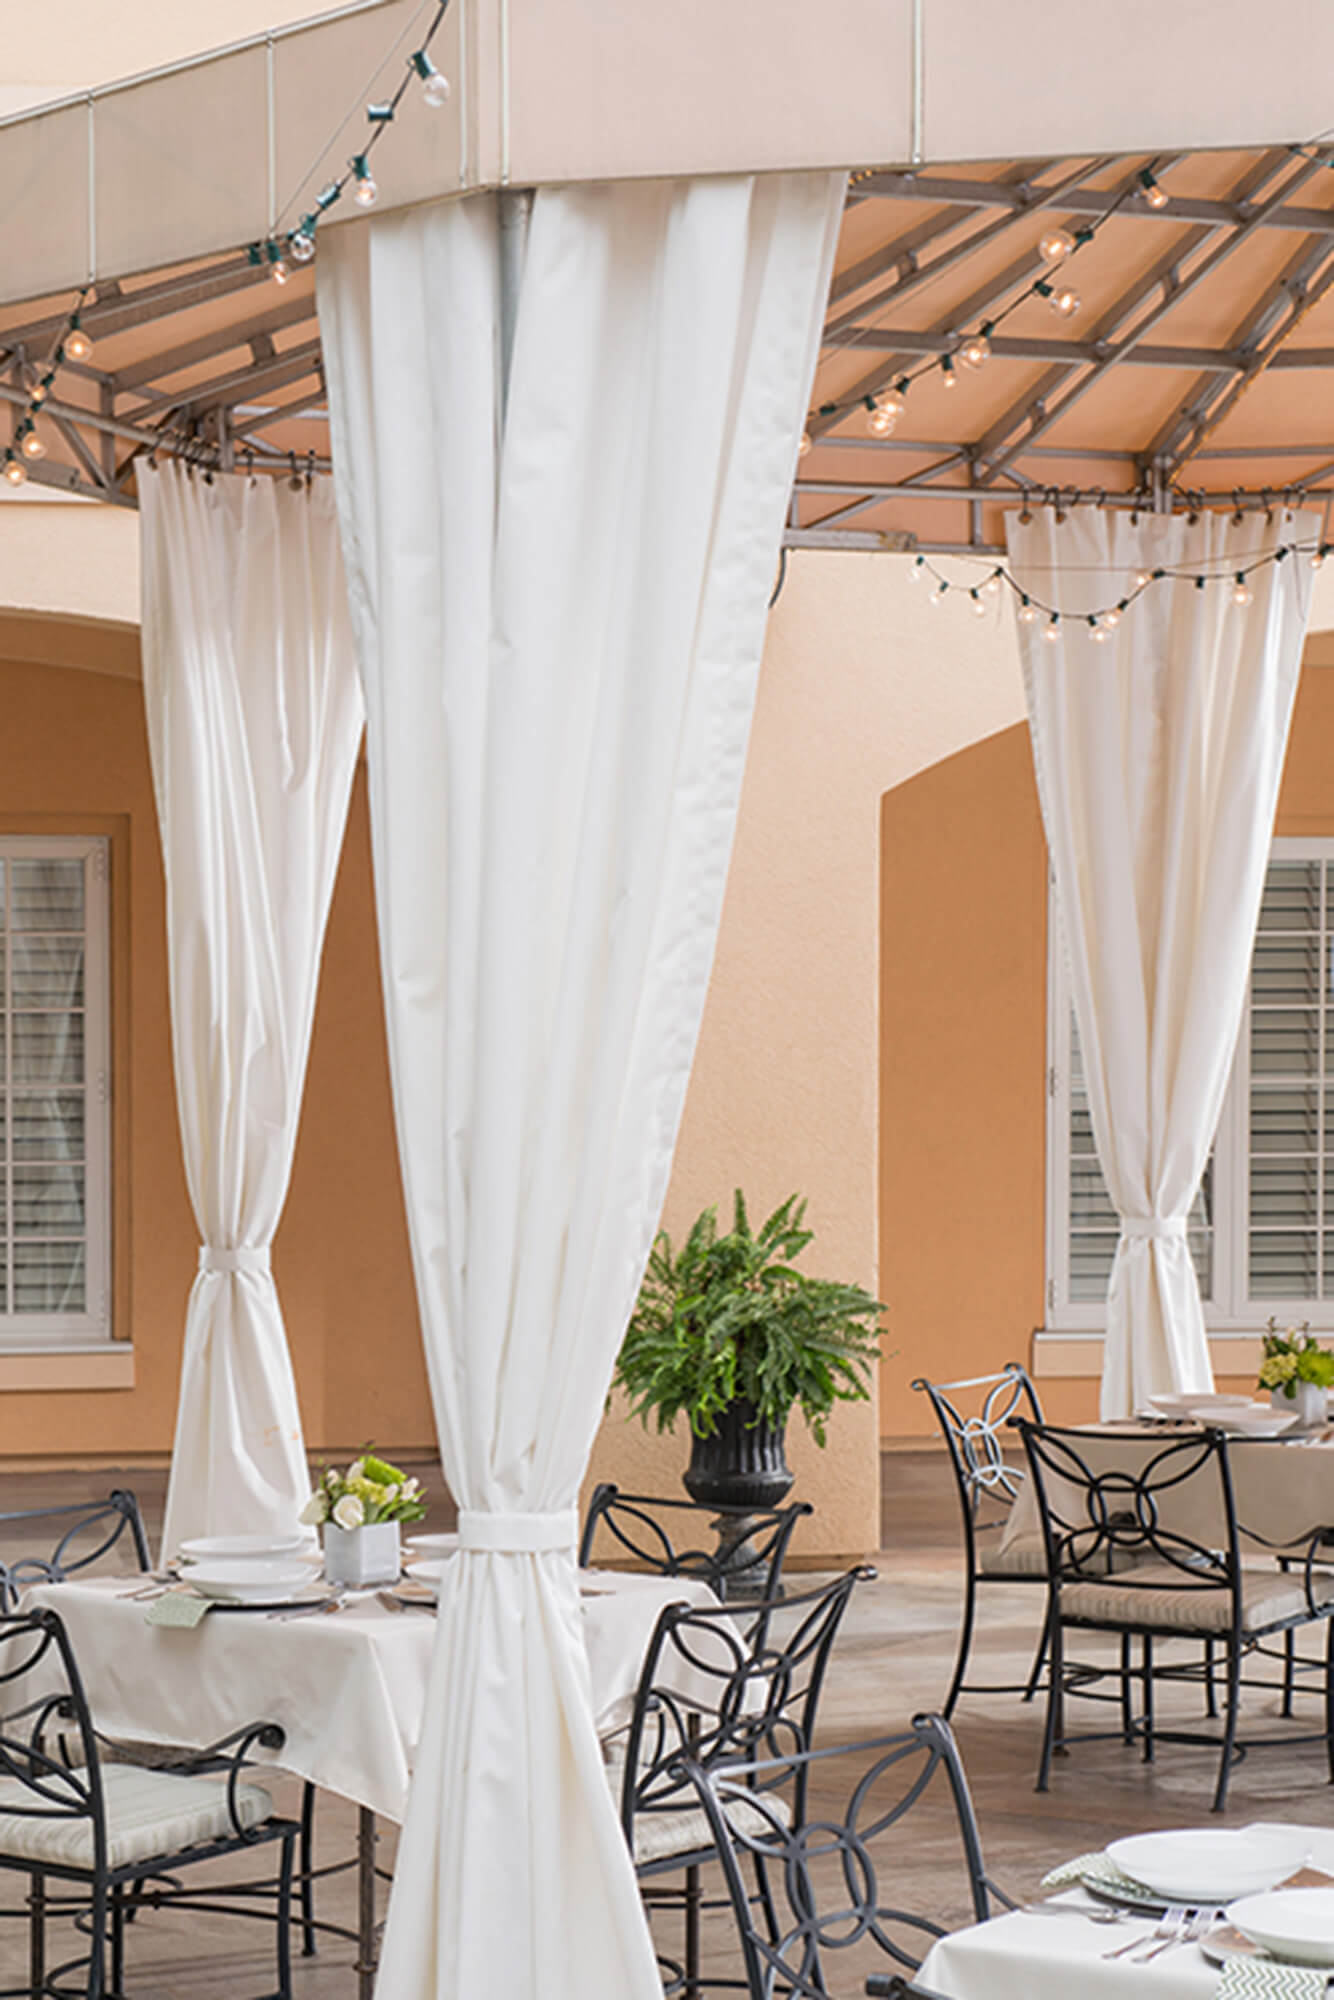 Um pátio de restaurante é protegido por um toldo fixo feito com tecido Sunbrella Clarity bege.